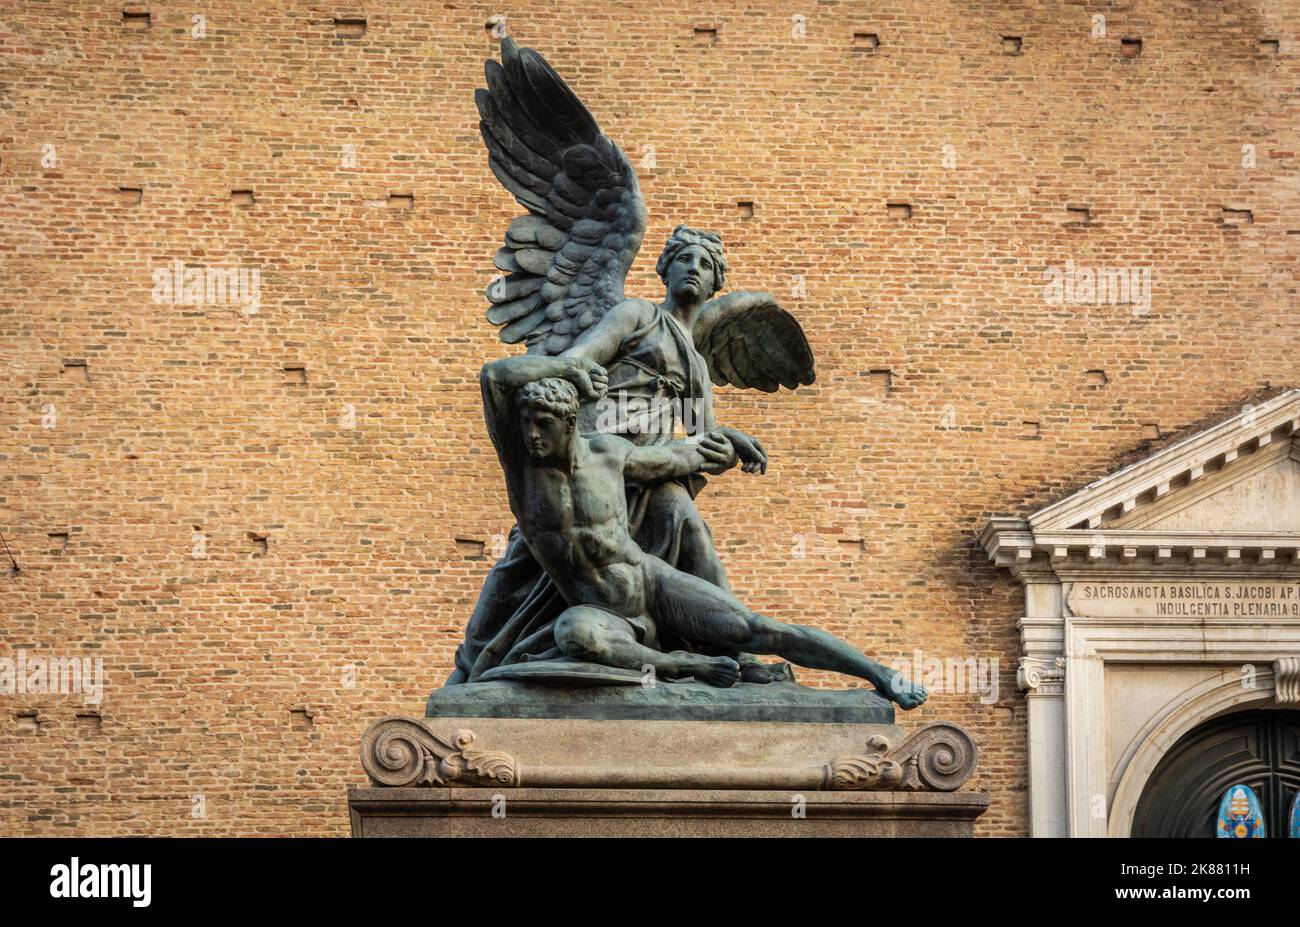 war memorial statue - winged victory - in Corso del Popolo in the historic center of Chioggia, Venetian lagoon,Venice province,Veneto region, Italy Stock Photo